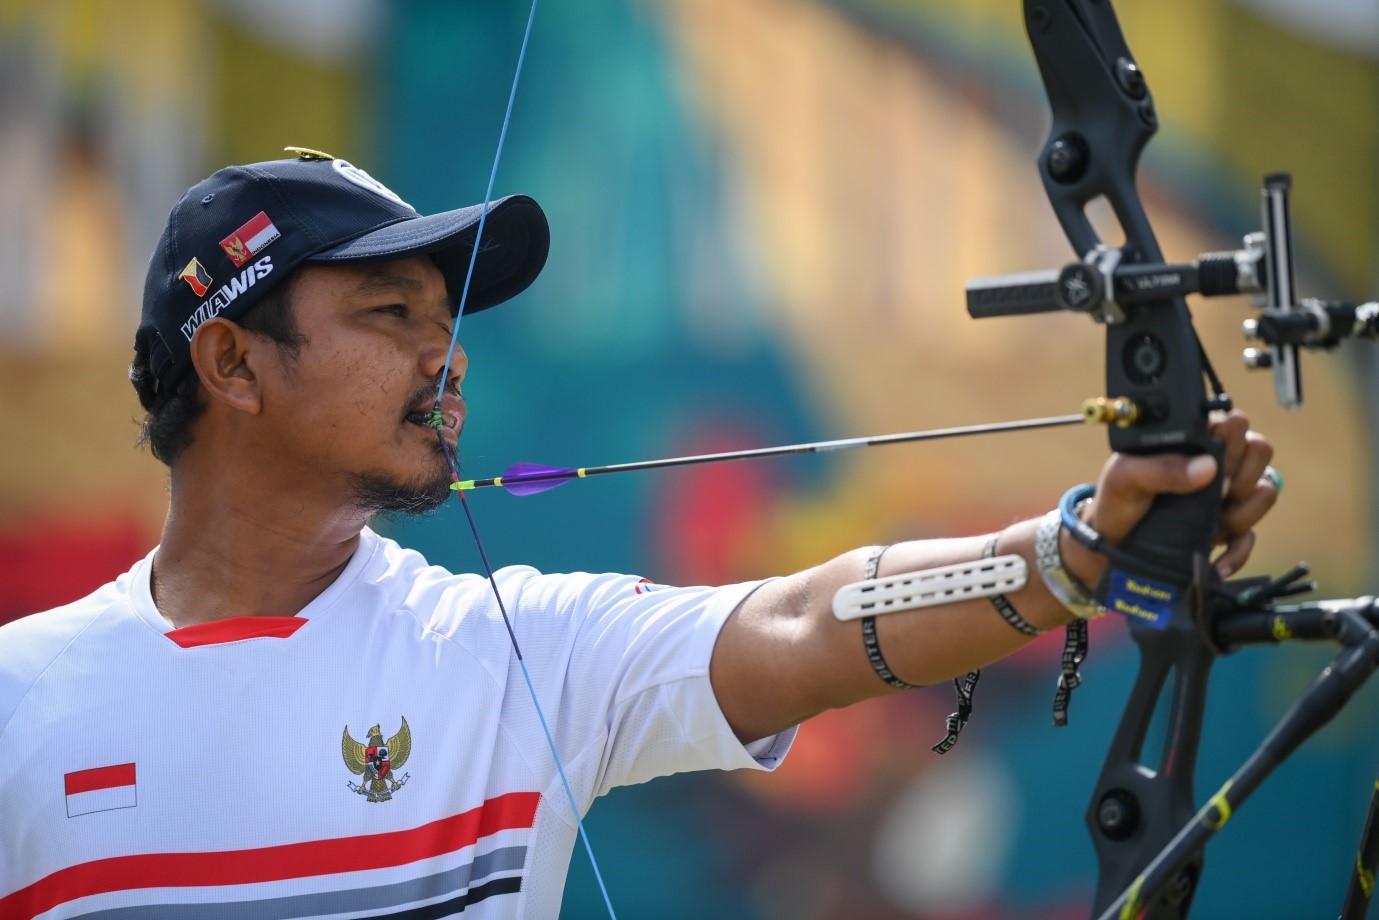 ASEAN Para Games 2022: Kholidin Memanah Dengan Gigi, Sabet 3 Medali di Solo